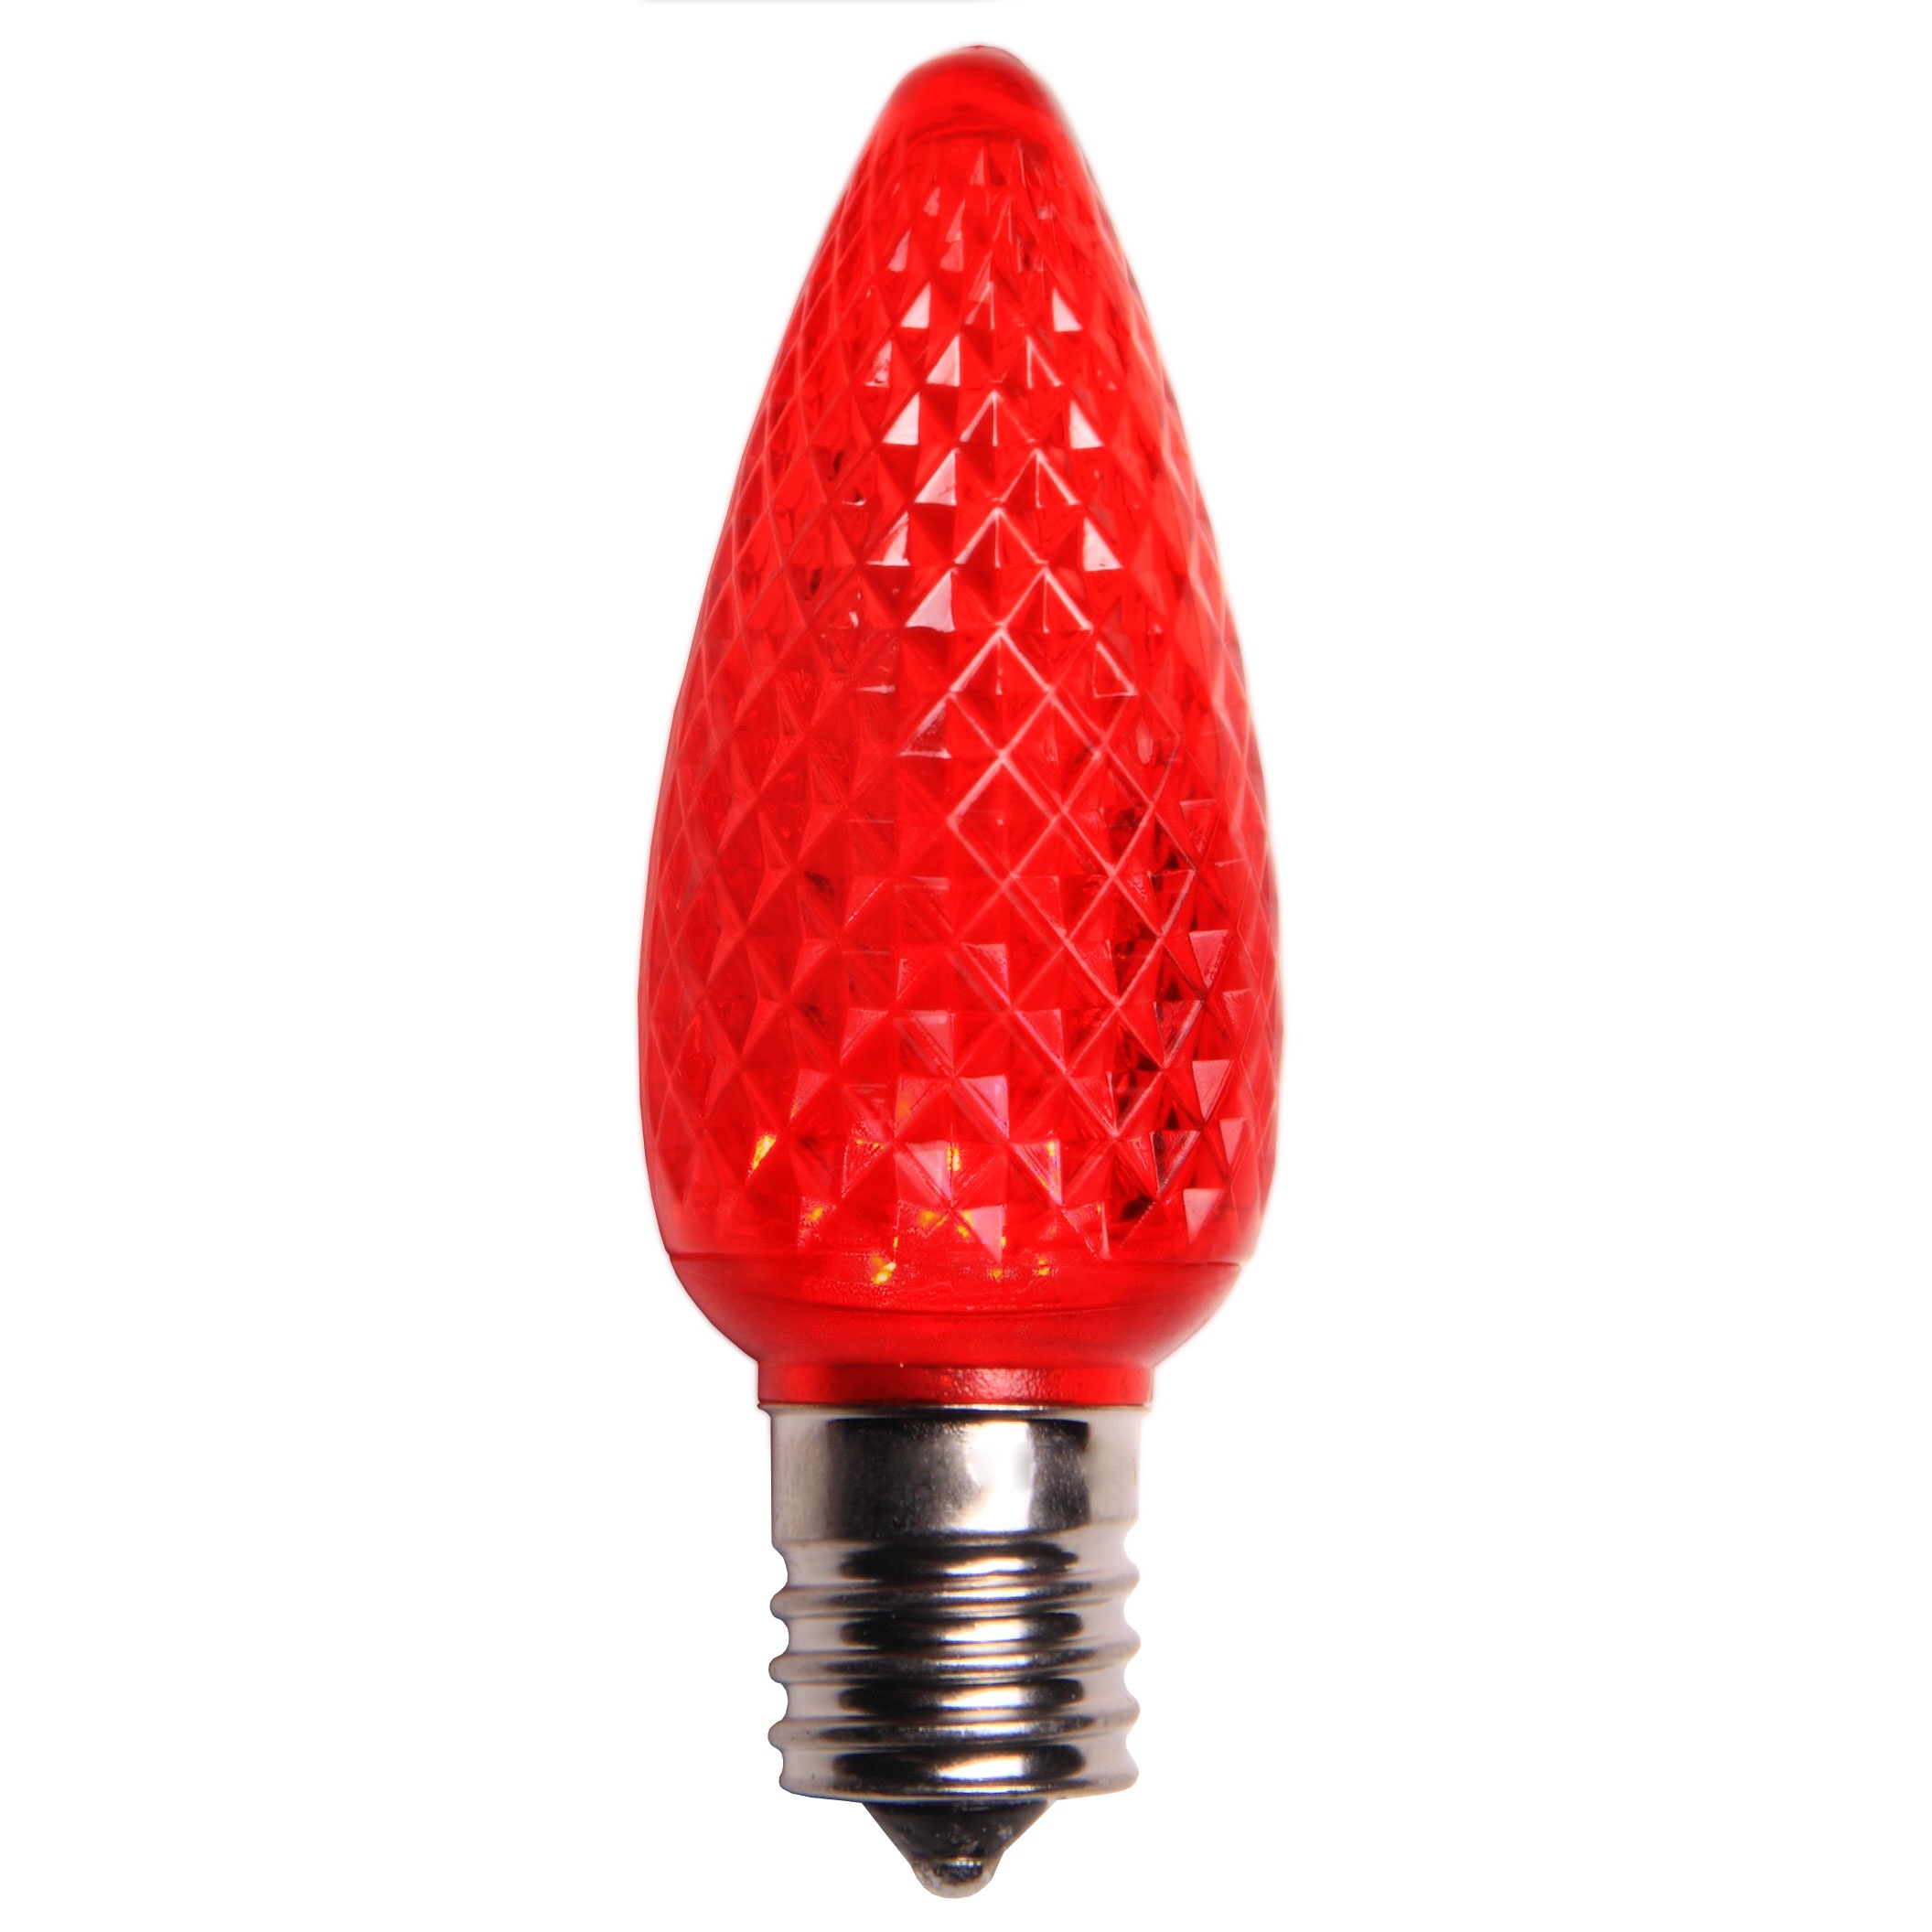 C9 Christmas Light Bulb - C9 Red Christmas Light Bulbs, Opaque